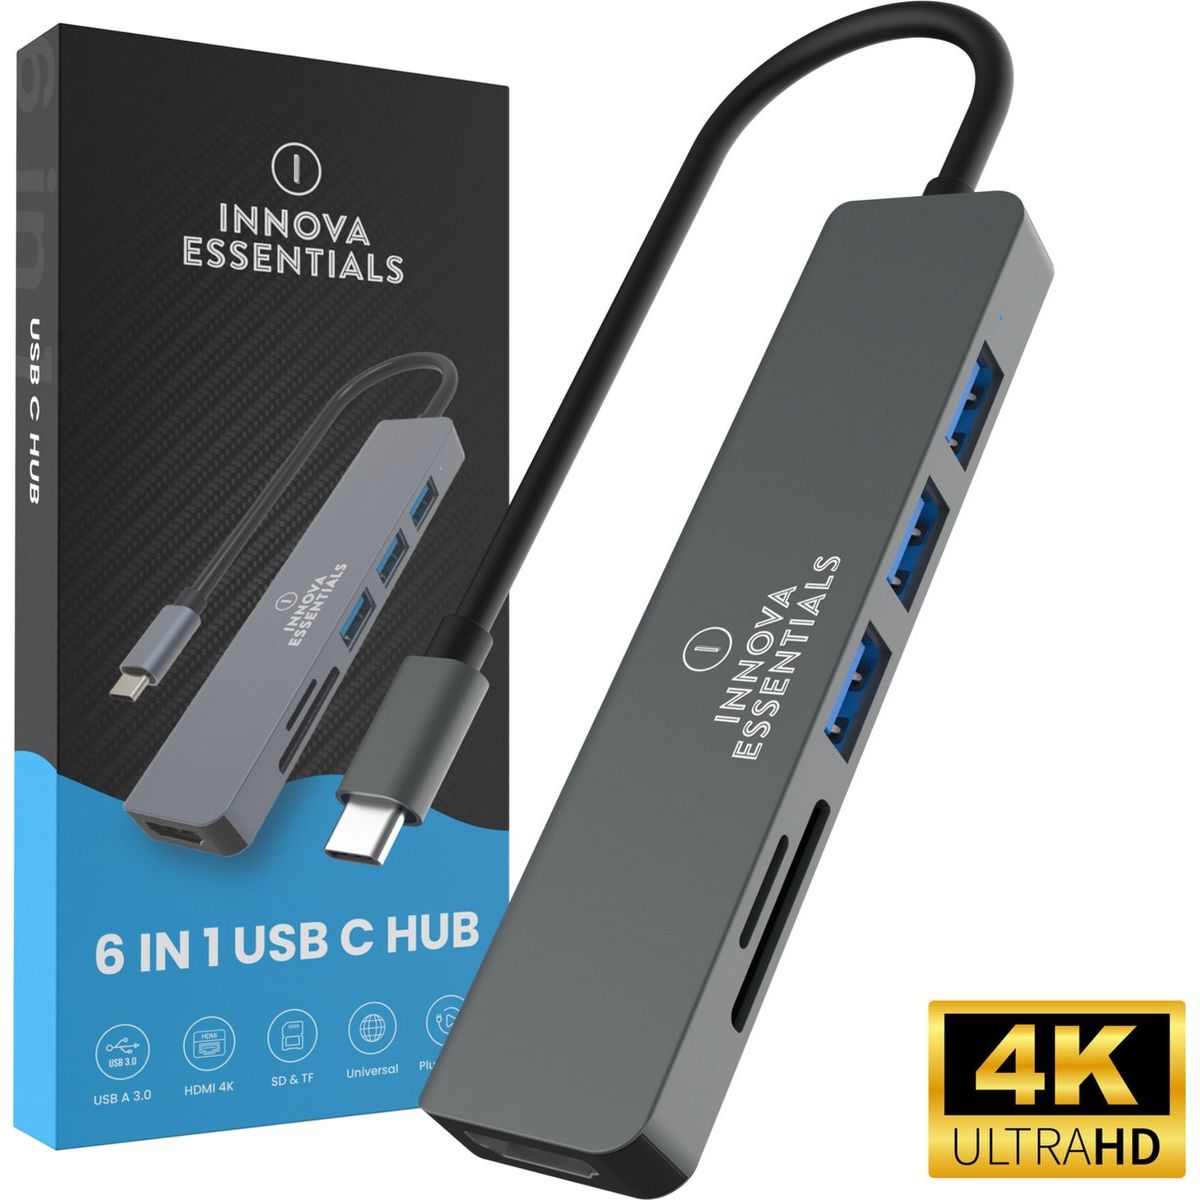 Innova Essentials 6 in 1 USB C Hub 3.0 - 4K UHD HDMI - Innova EssentialsInnova Essentials